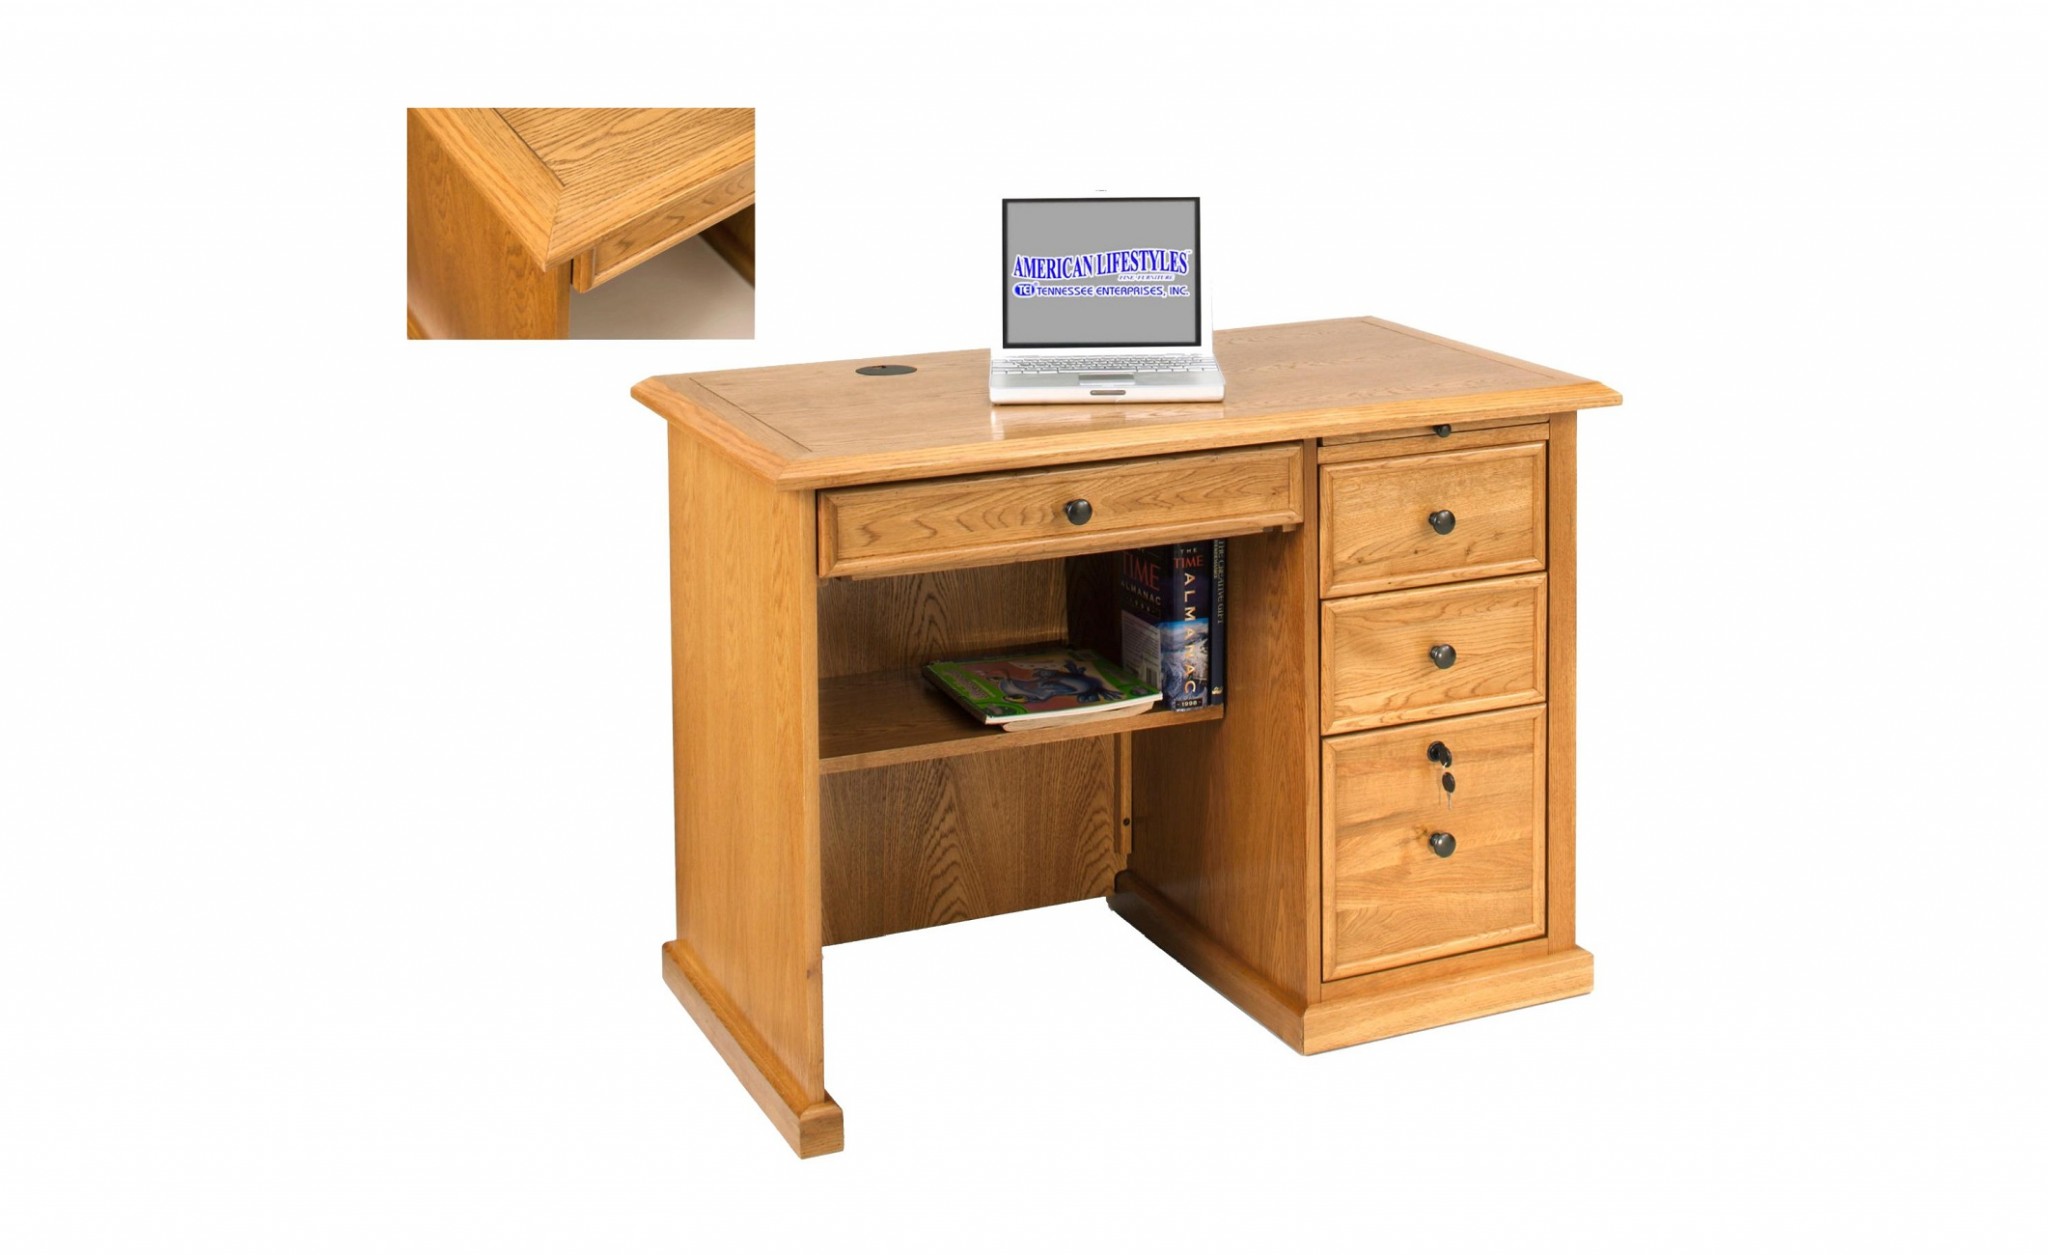 42" X 24" X 30" Harvest Oak Hardwood Desk